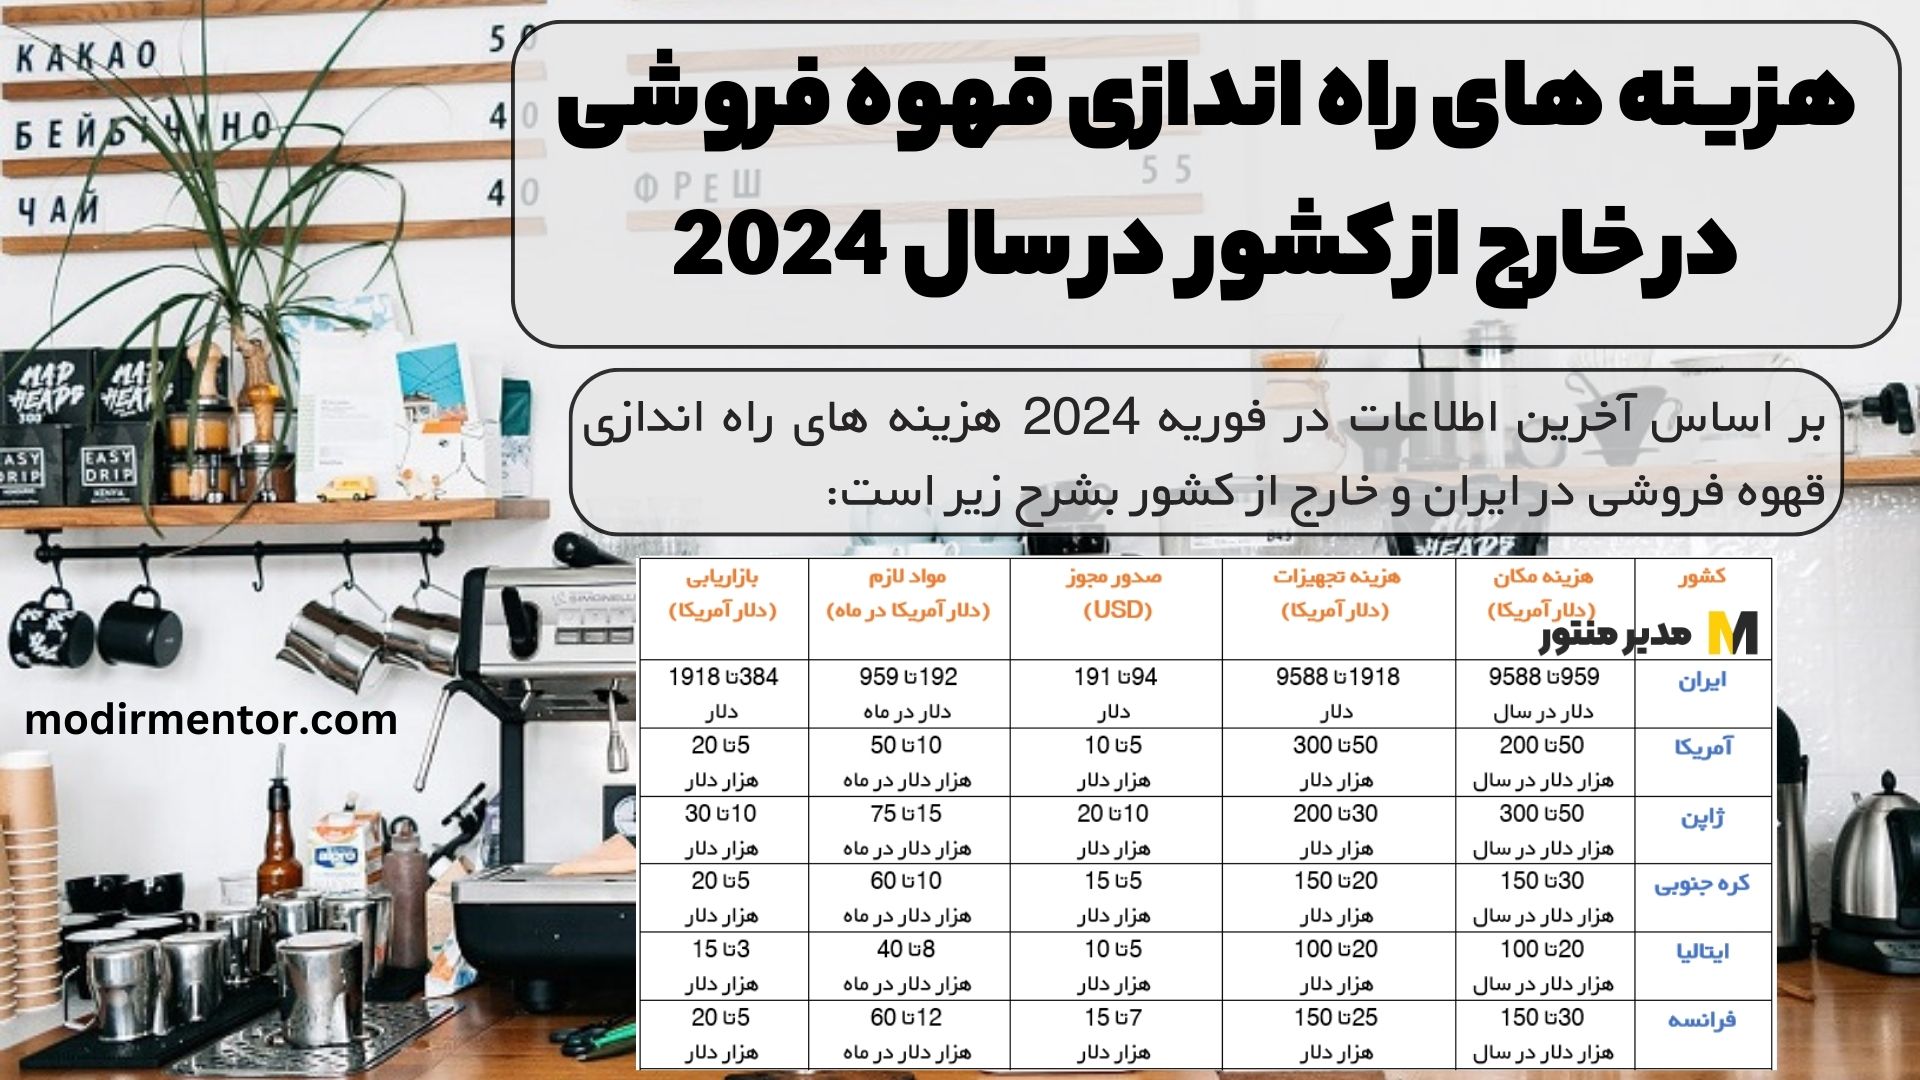 هزینه های راه اندازی قهوه فروشی در ایران و خارج از کشور در سال 2024